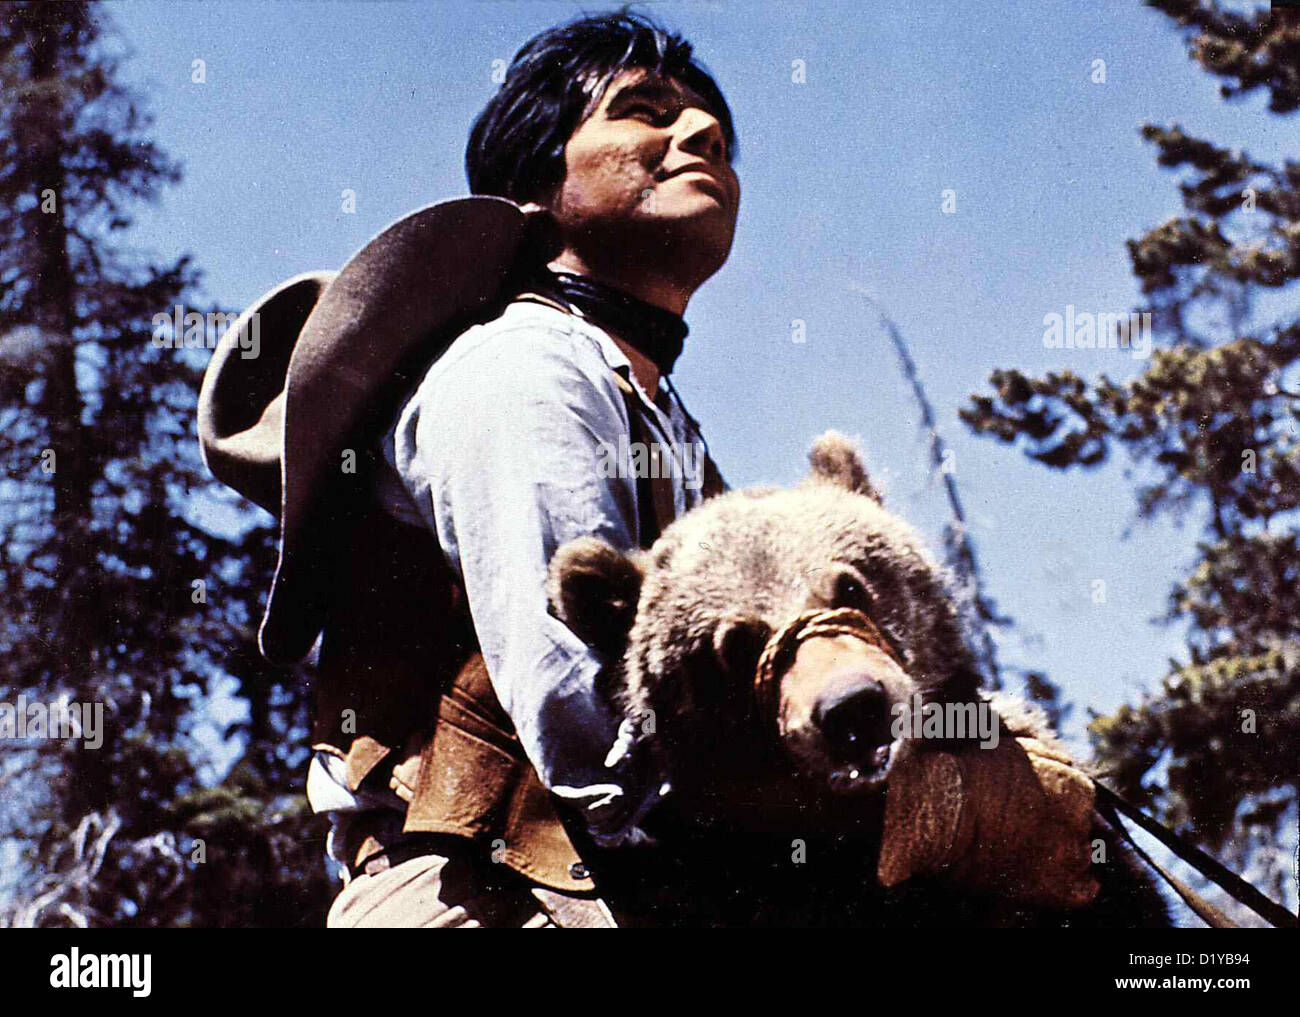 Koenig Der Grizzlys re Grizzlies, John Yesno Moki (Giovanni Yesno) rettet einen kleinen Baeren, dessen Mutter getoetet wurde Foto Stock